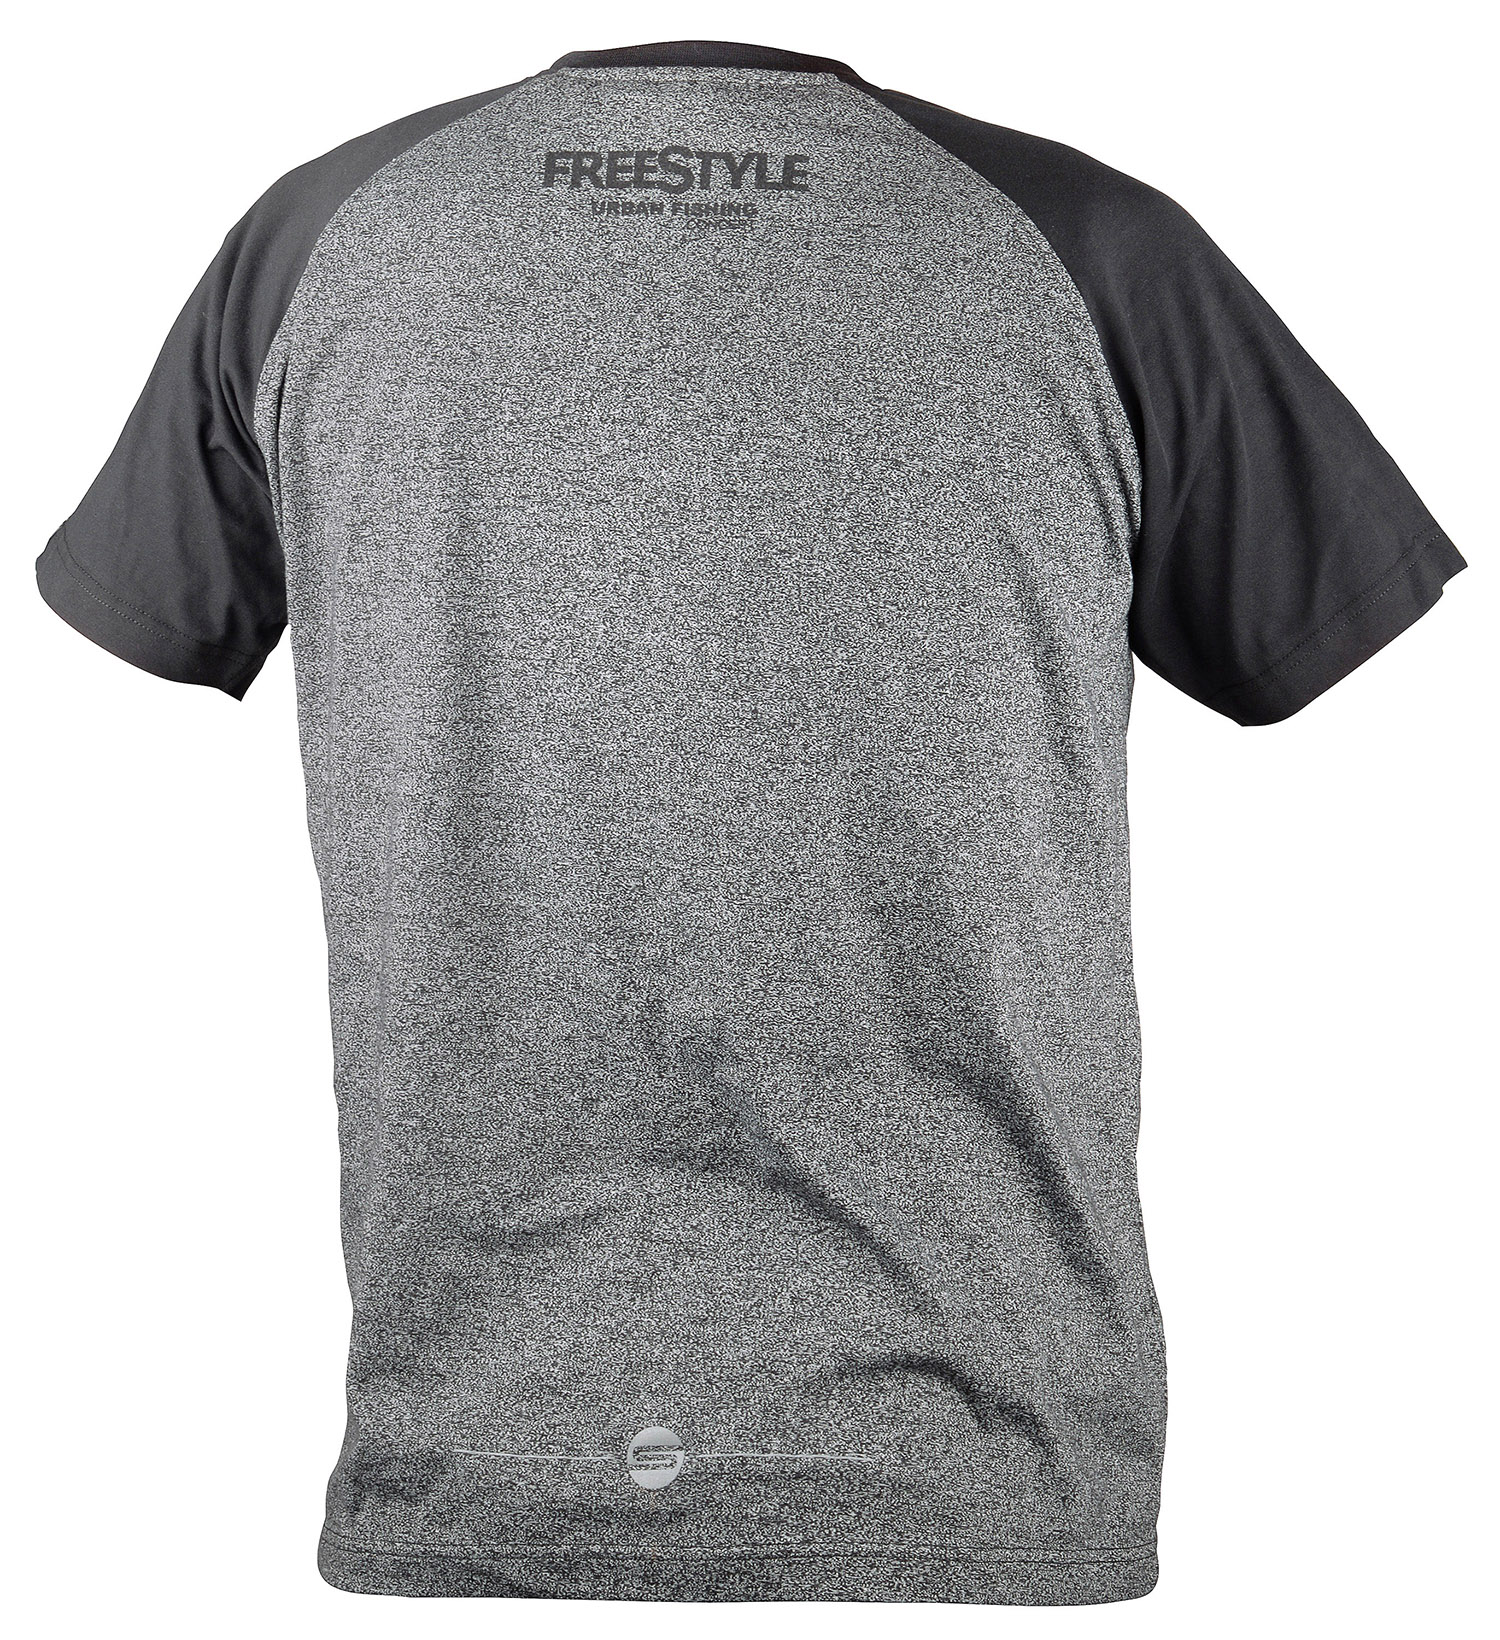 Spro Freestyle Camiseta Gris